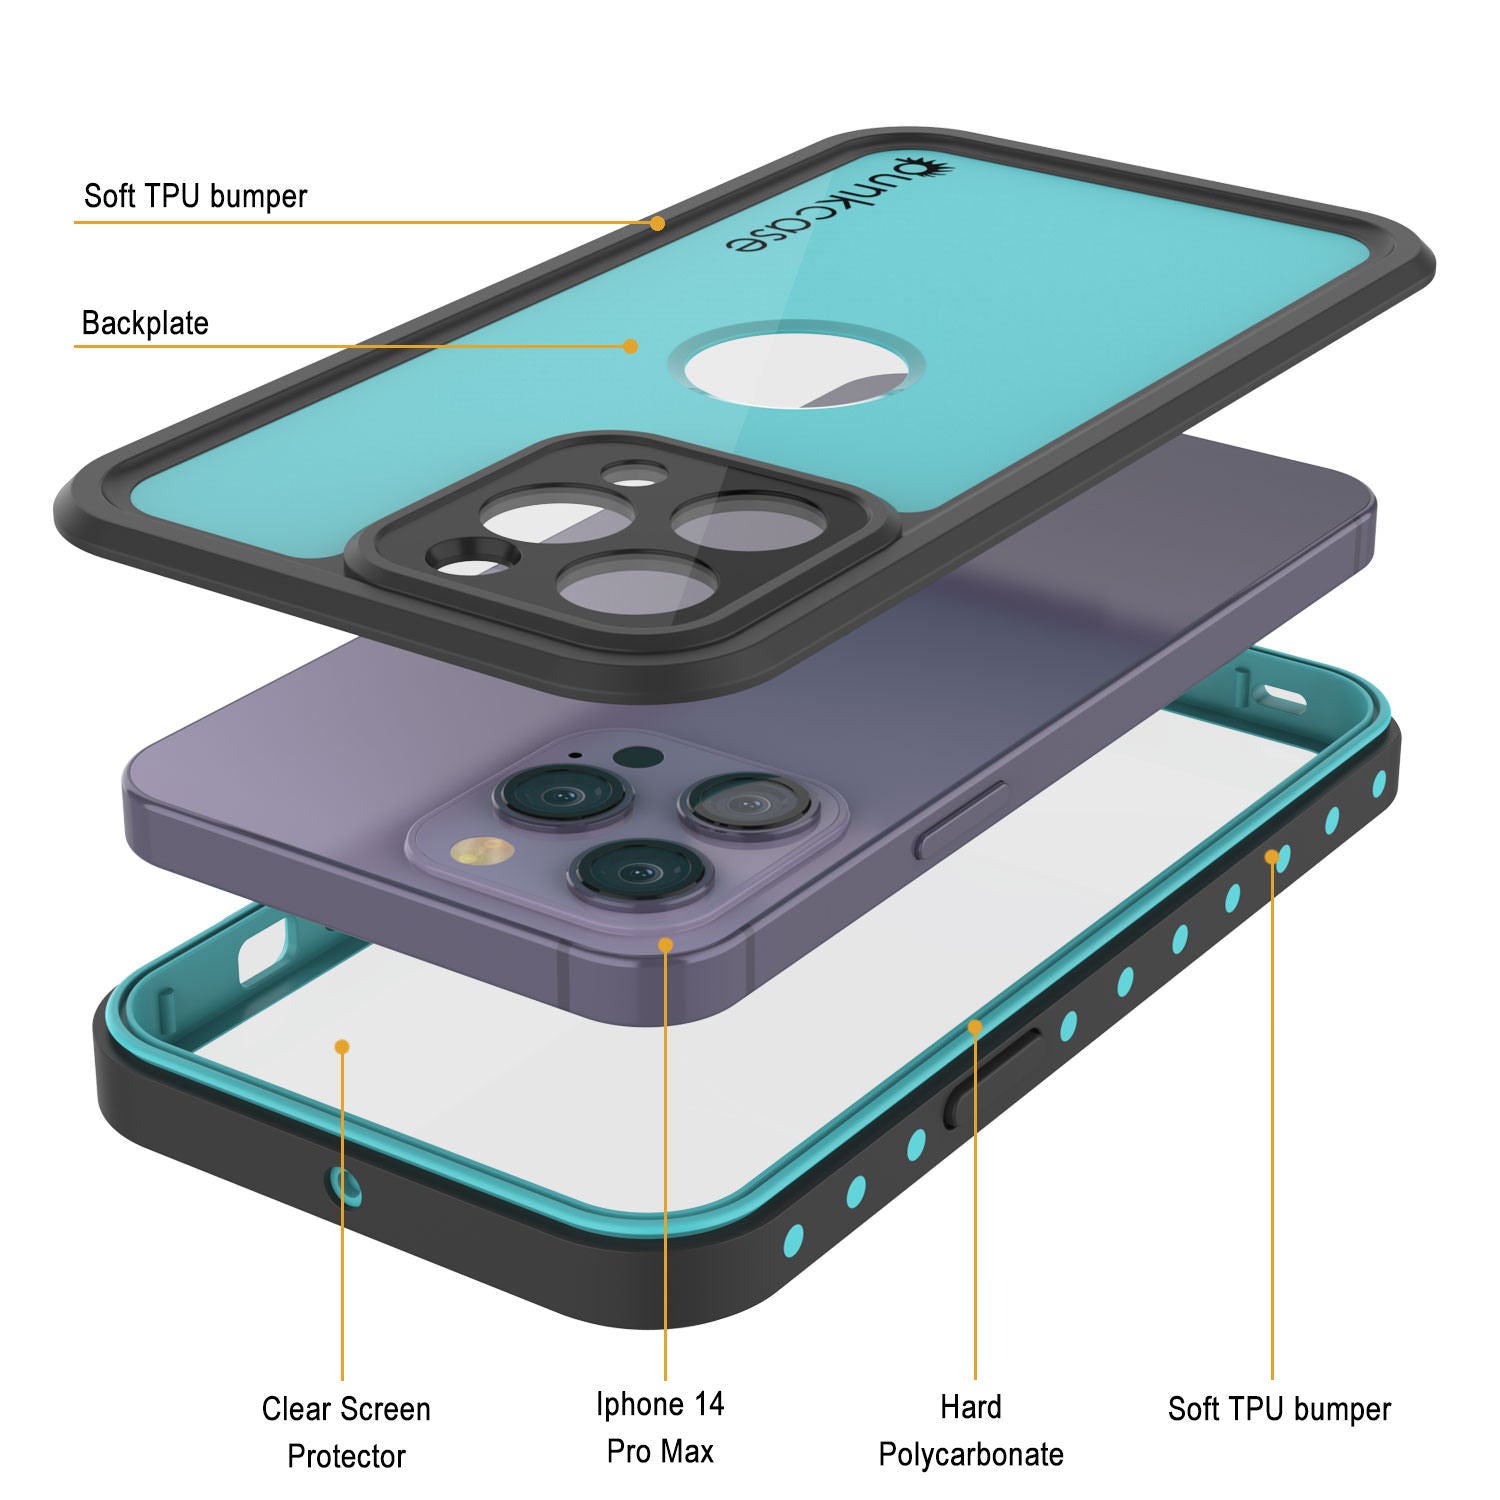 iPhone 14 Pro Max Waterproof IP68 Case, Punkcase [Teal] [StudStar Series] [Slim Fit]